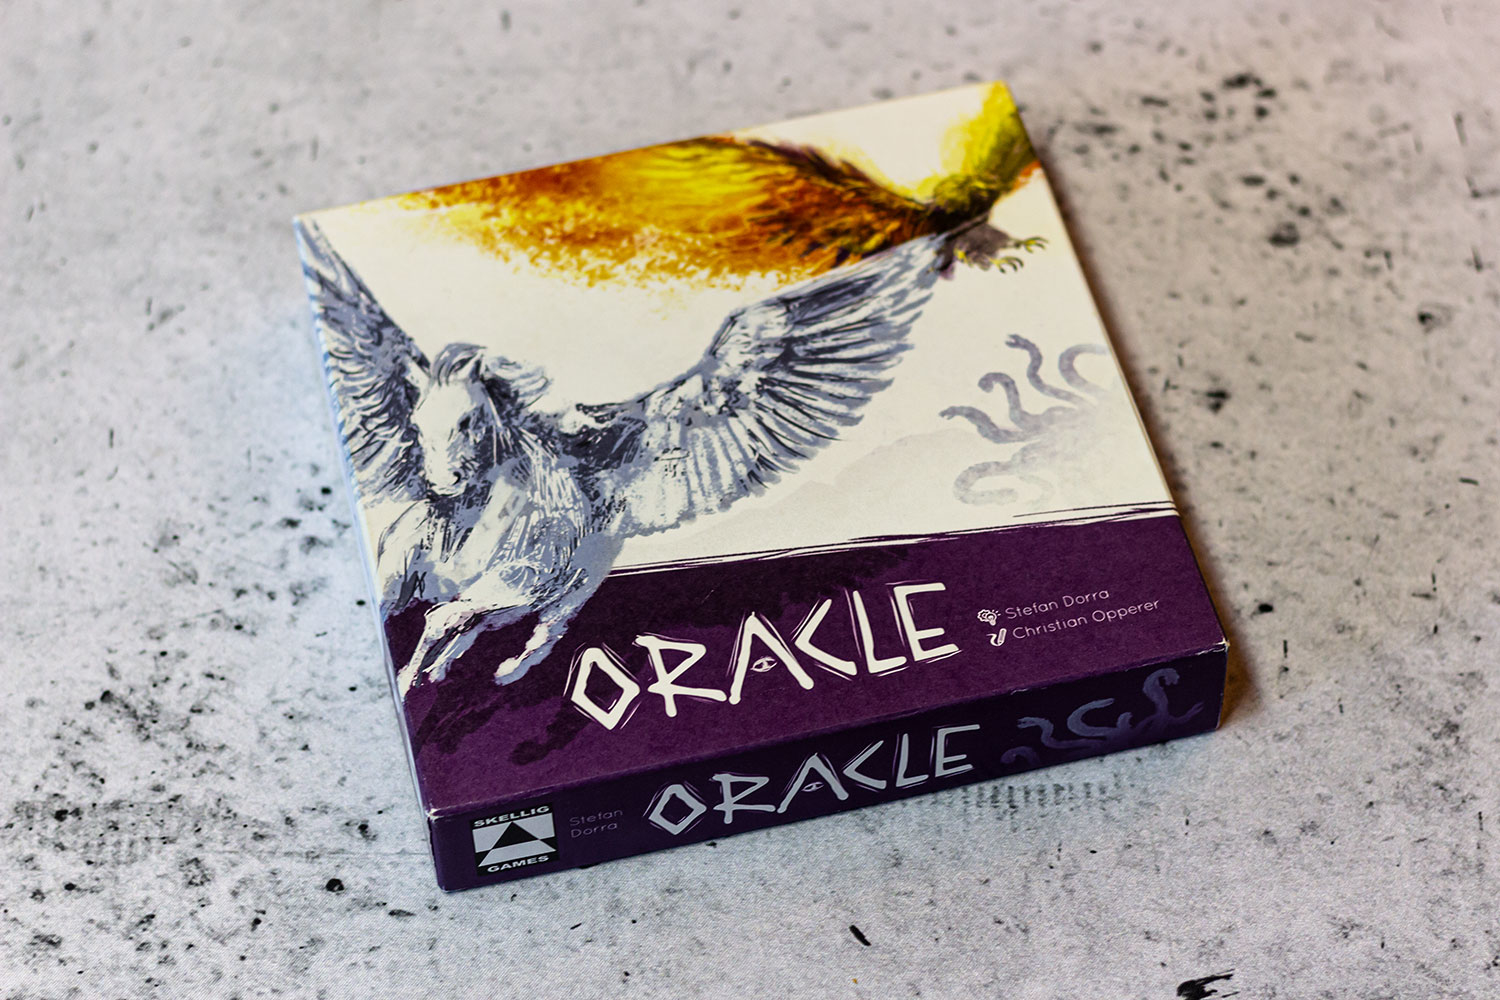 ORACLE // Bilder vom Prototyp